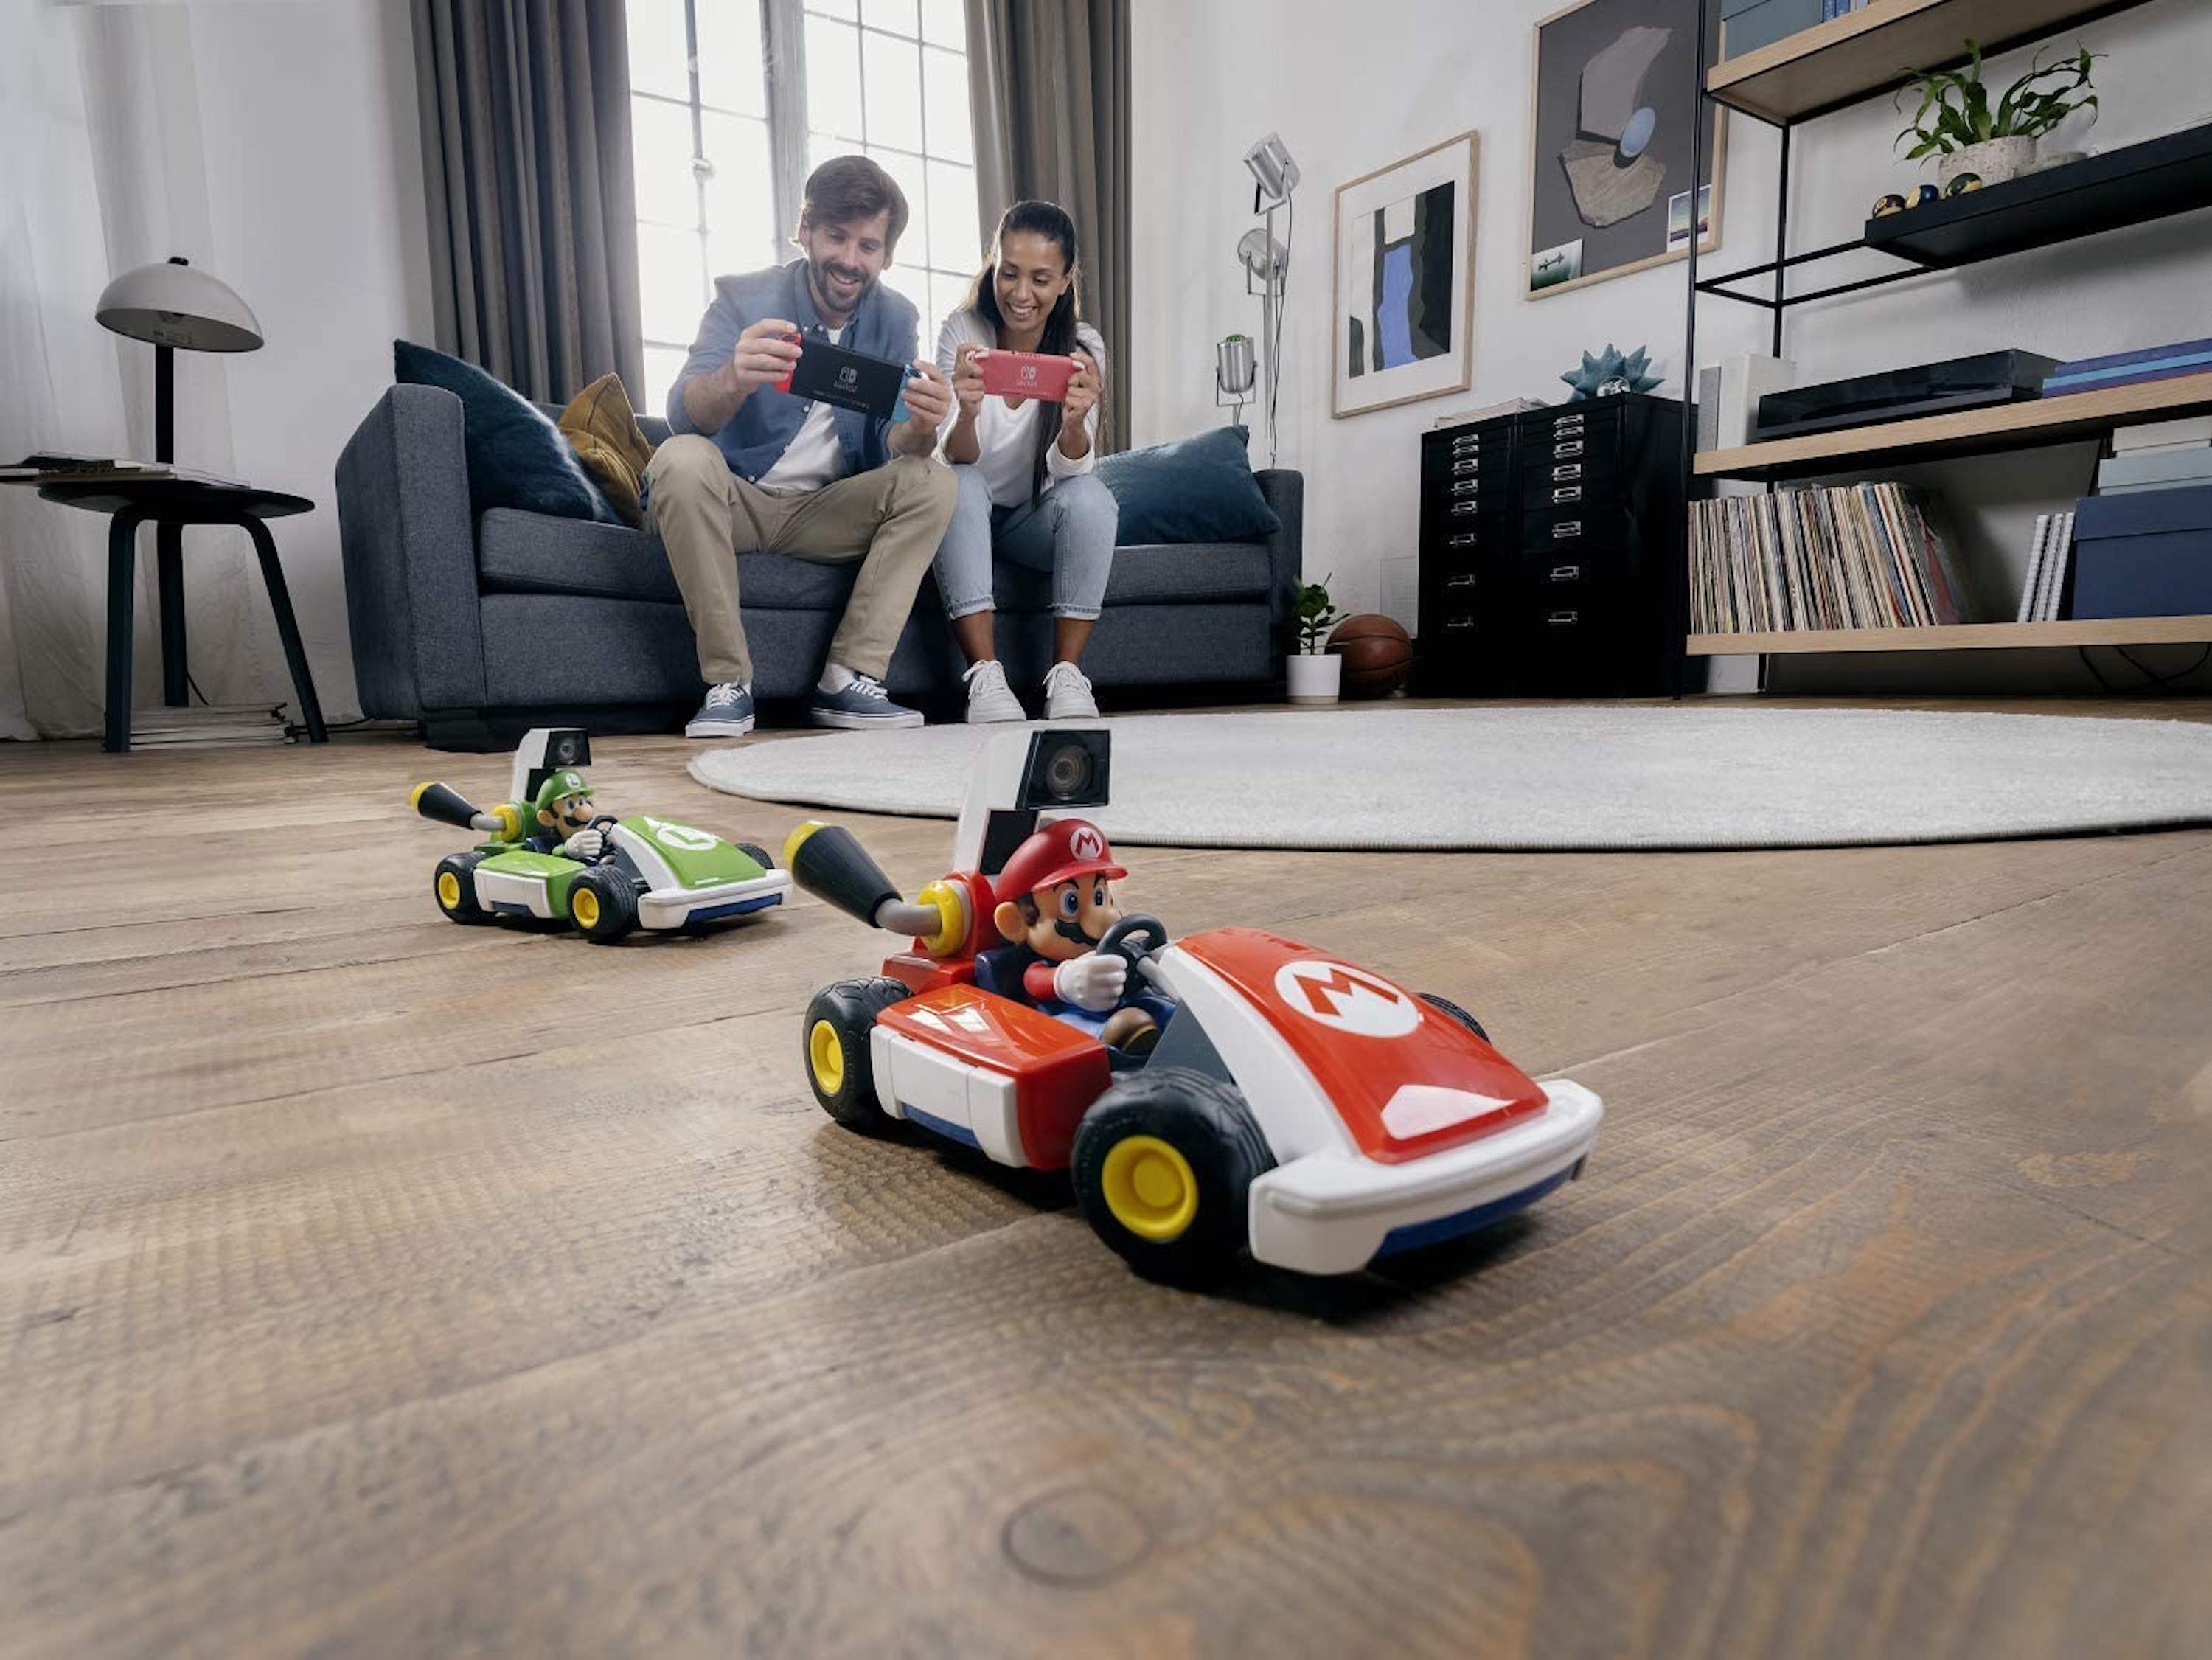 Mario Kart Live: el videojuego más real para transformar tu casa